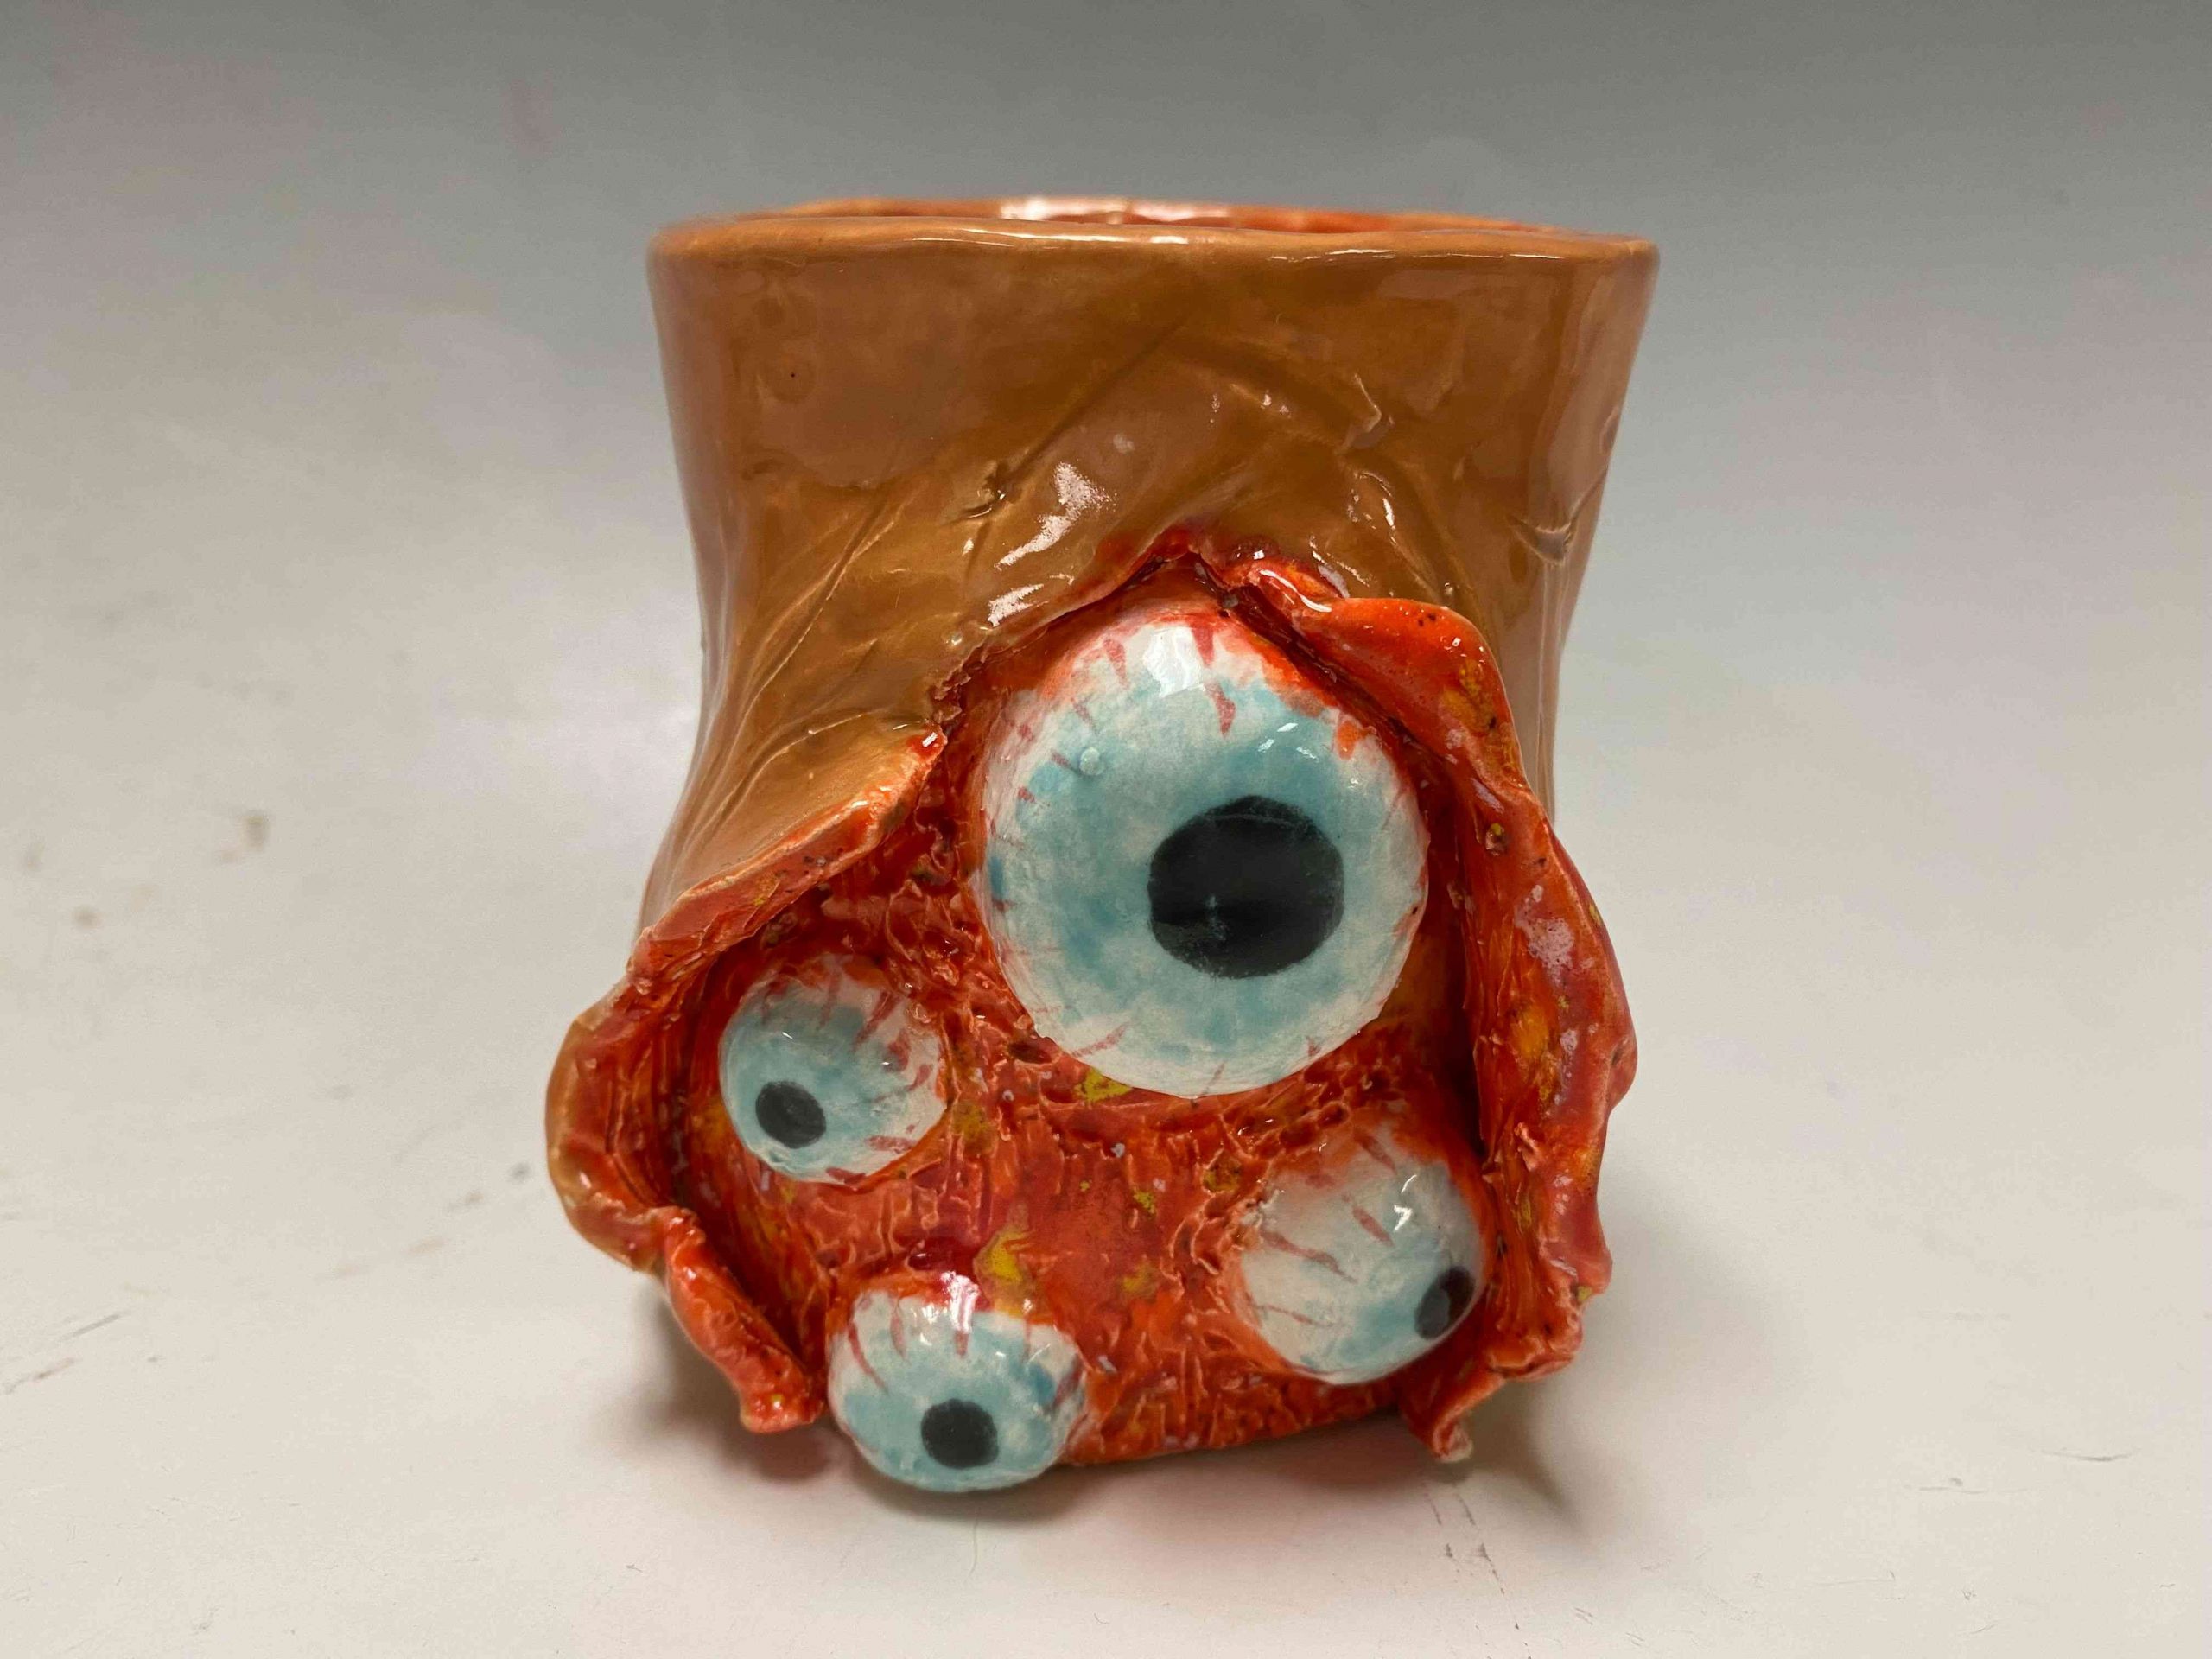 A ceramic with a few eyes